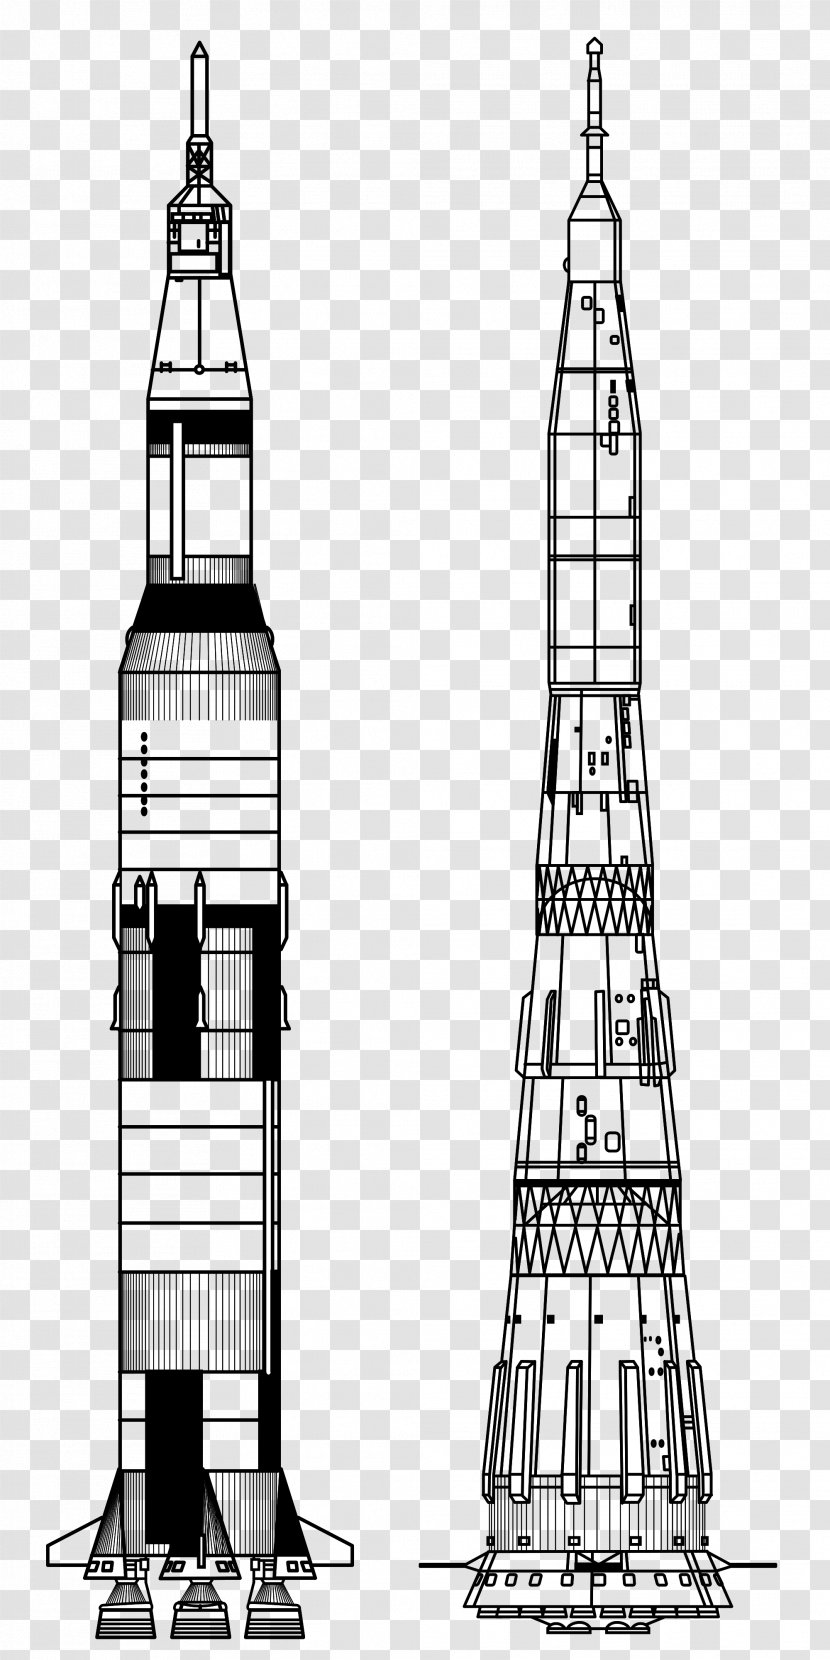 Apollo Program 11 13 Saturn V N1 - Lunar Module - Rockets Transparent PNG